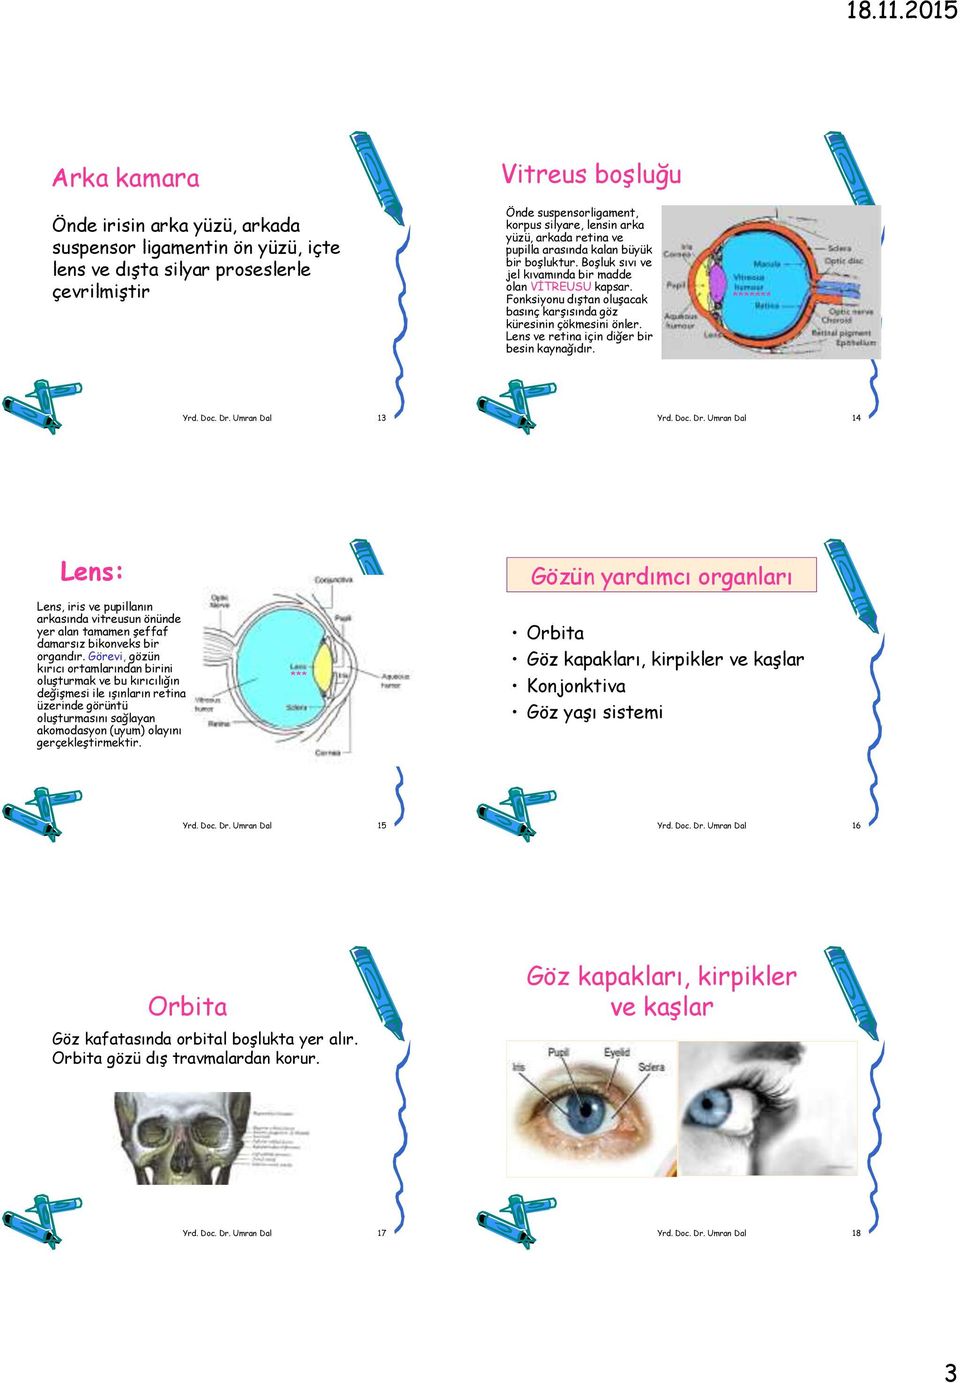 Lens ve retina için diğer bir besin kaynağıdır. ******* Yrd. Doc. Dr. Umran Dal 13 Yrd. Doc. Dr. Umran Dal 14 Lens: Lens, iris ve pupillanın arkasında vitreusun önünde yer alan tamamen şeffaf damarsız bikonveks bir organdır.